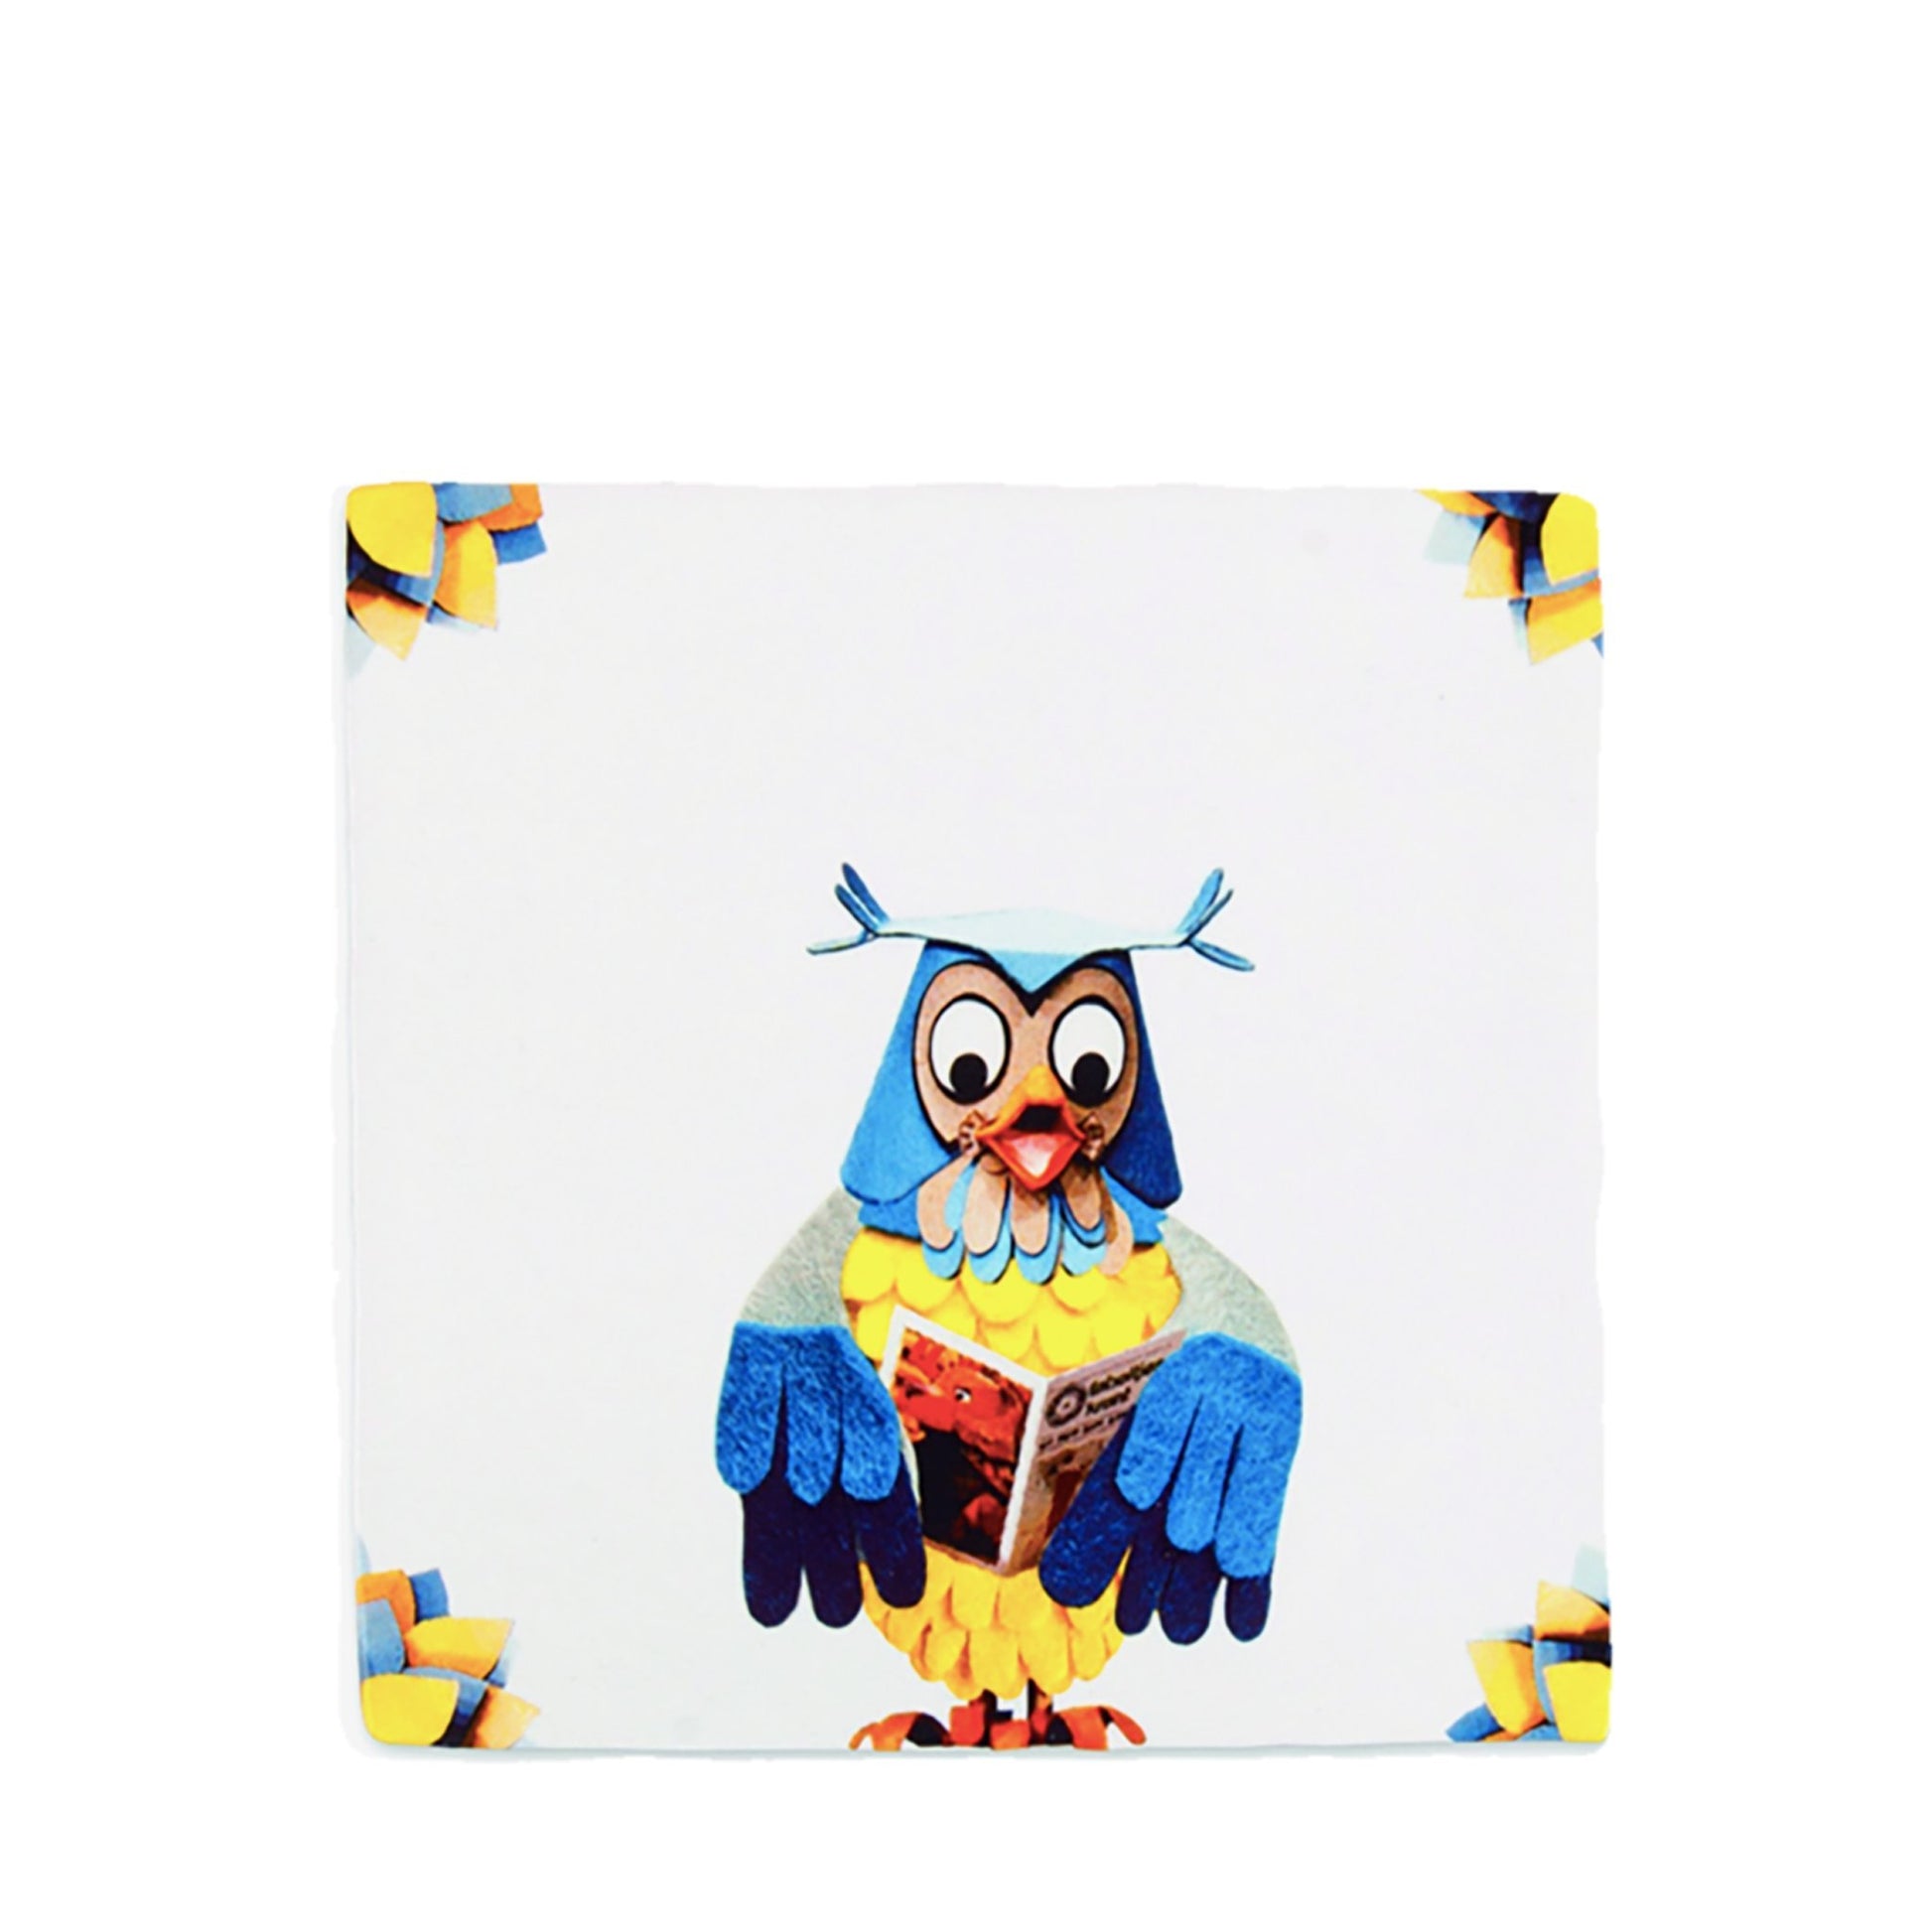 Fliese mit einer Geschichte - Mister Owl - Vandeley